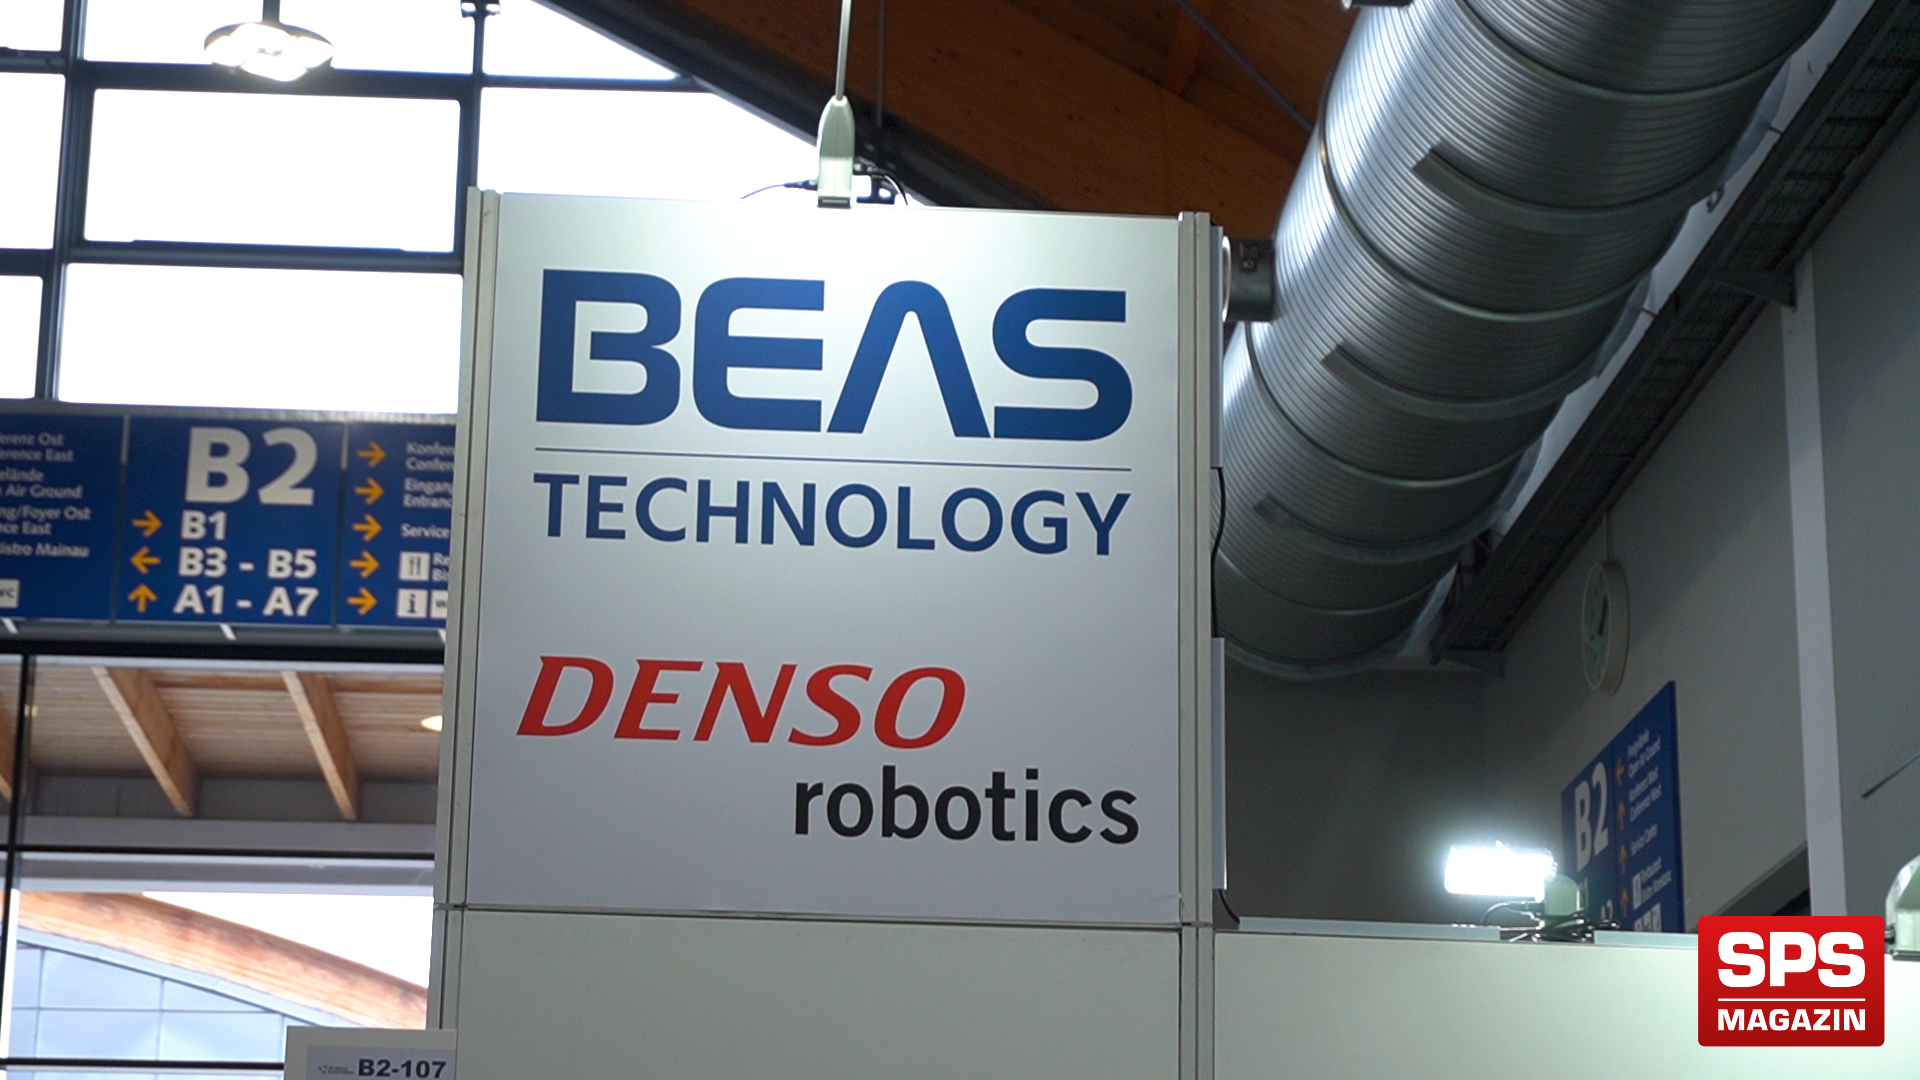 SPS-MAGAZIN auf der AAA Friedrichshafen zu Besuch bei Denso Robotics